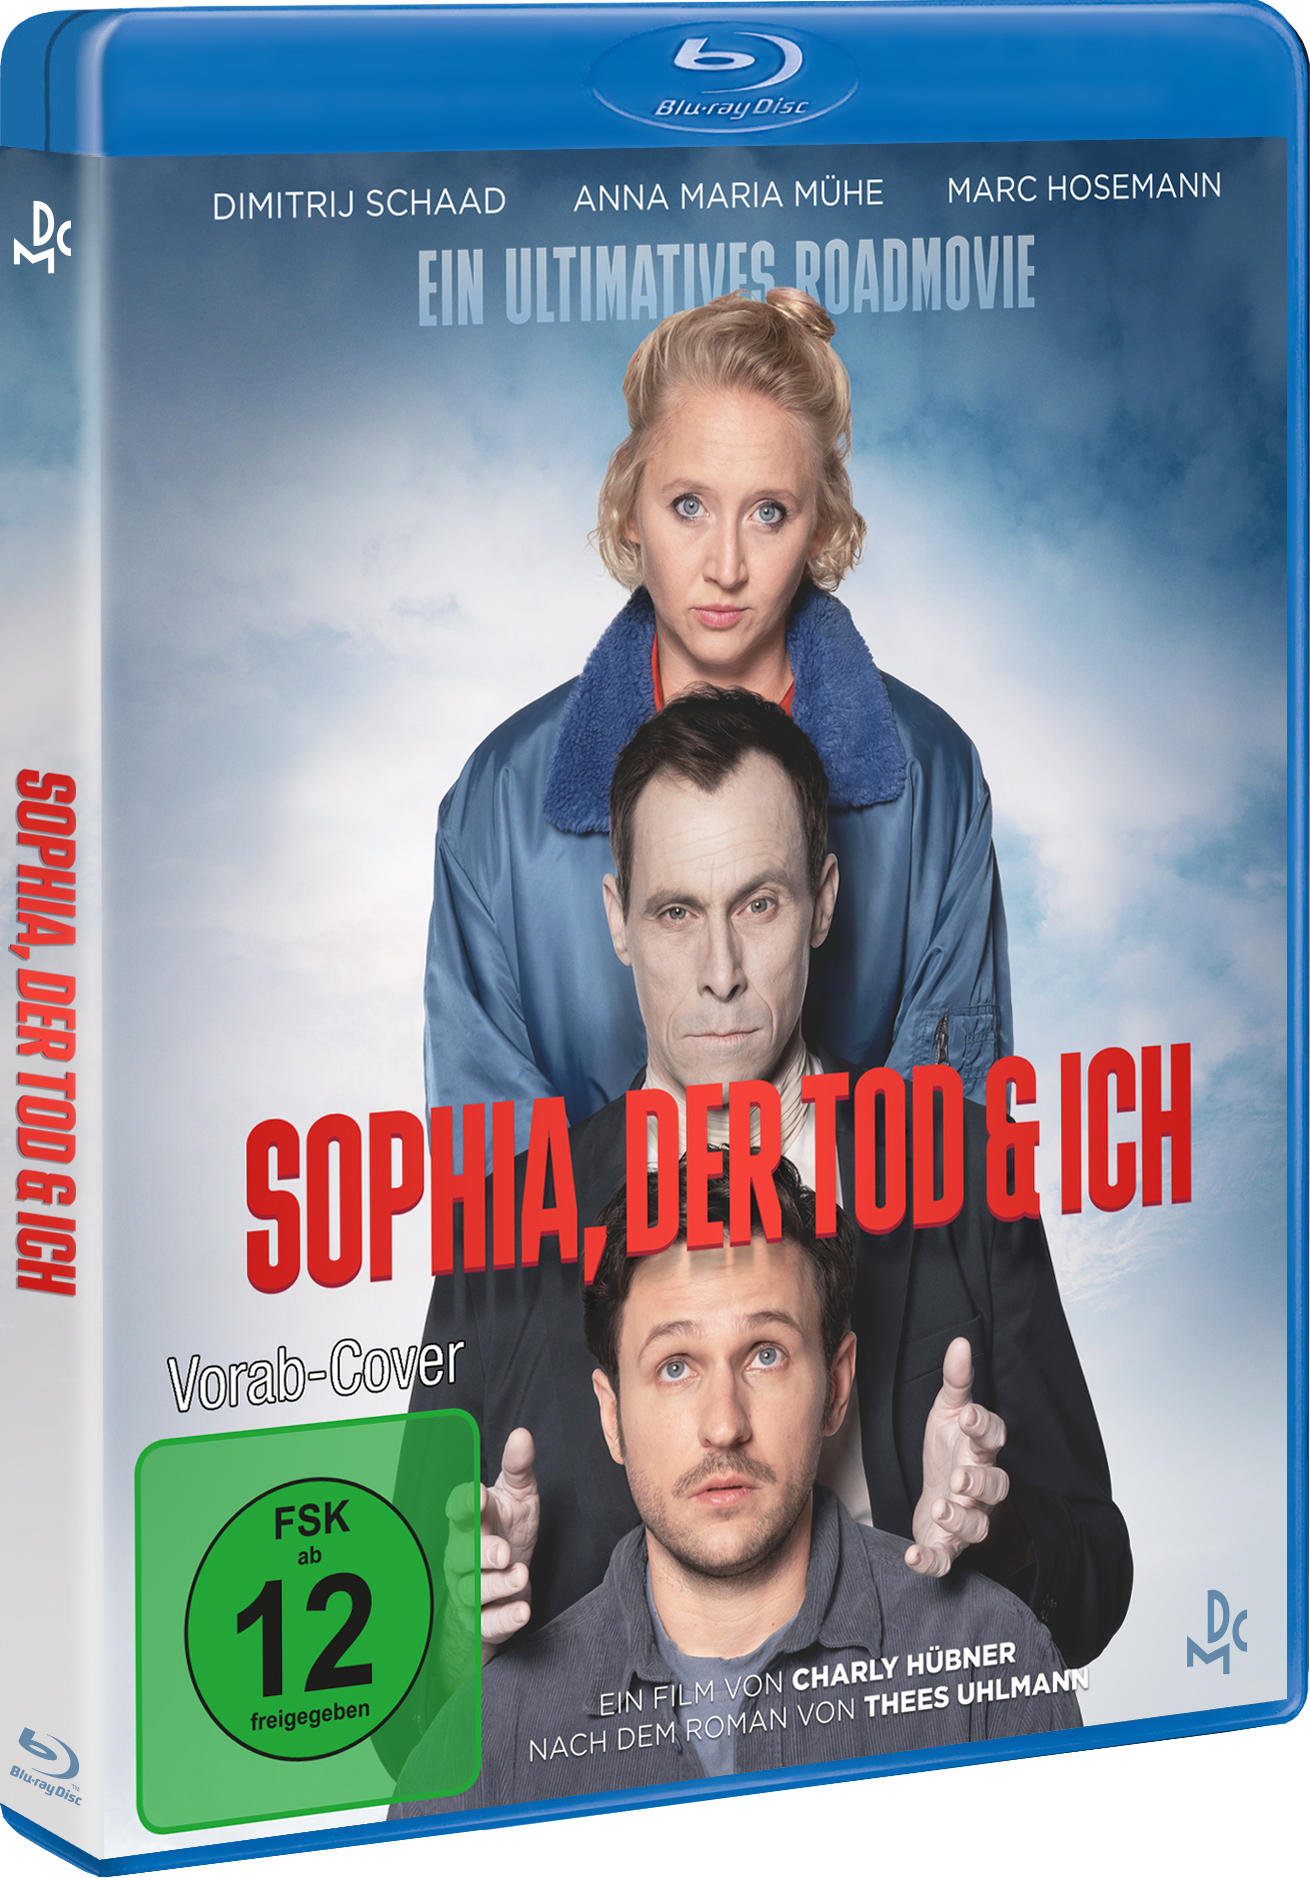 Sophia, der und Blu-ray Tod ich